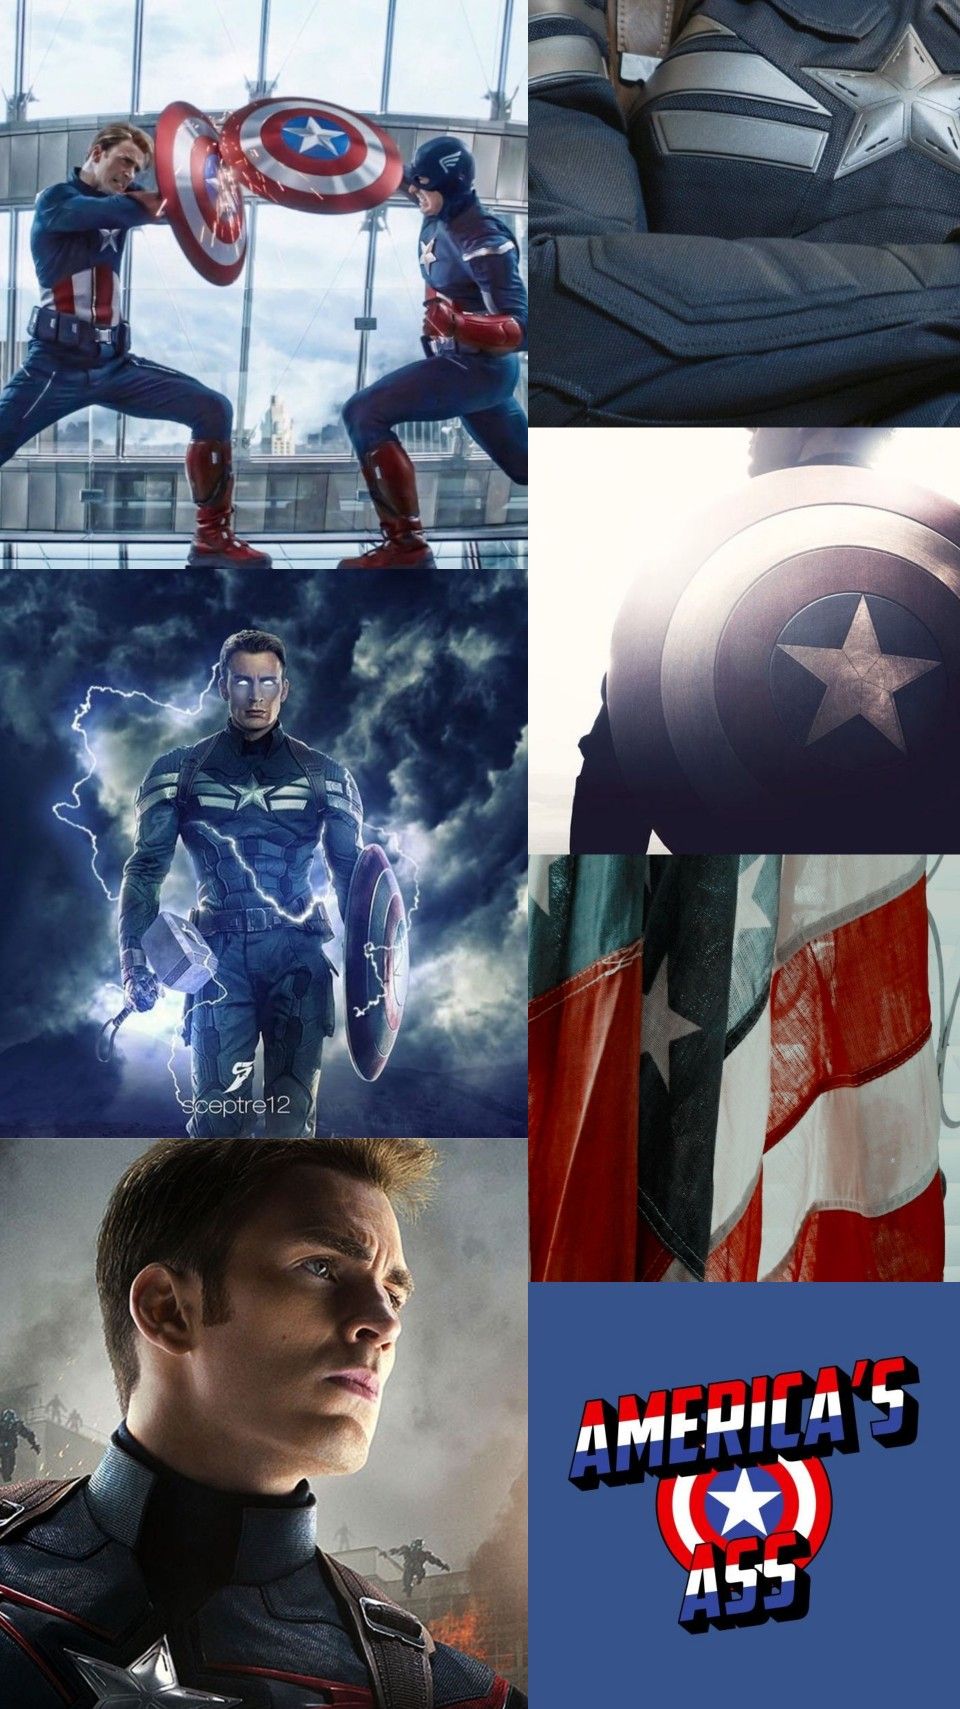 Marvel captain america aesthetic. Captain america aesthetic, Marvel captain america, Captain america